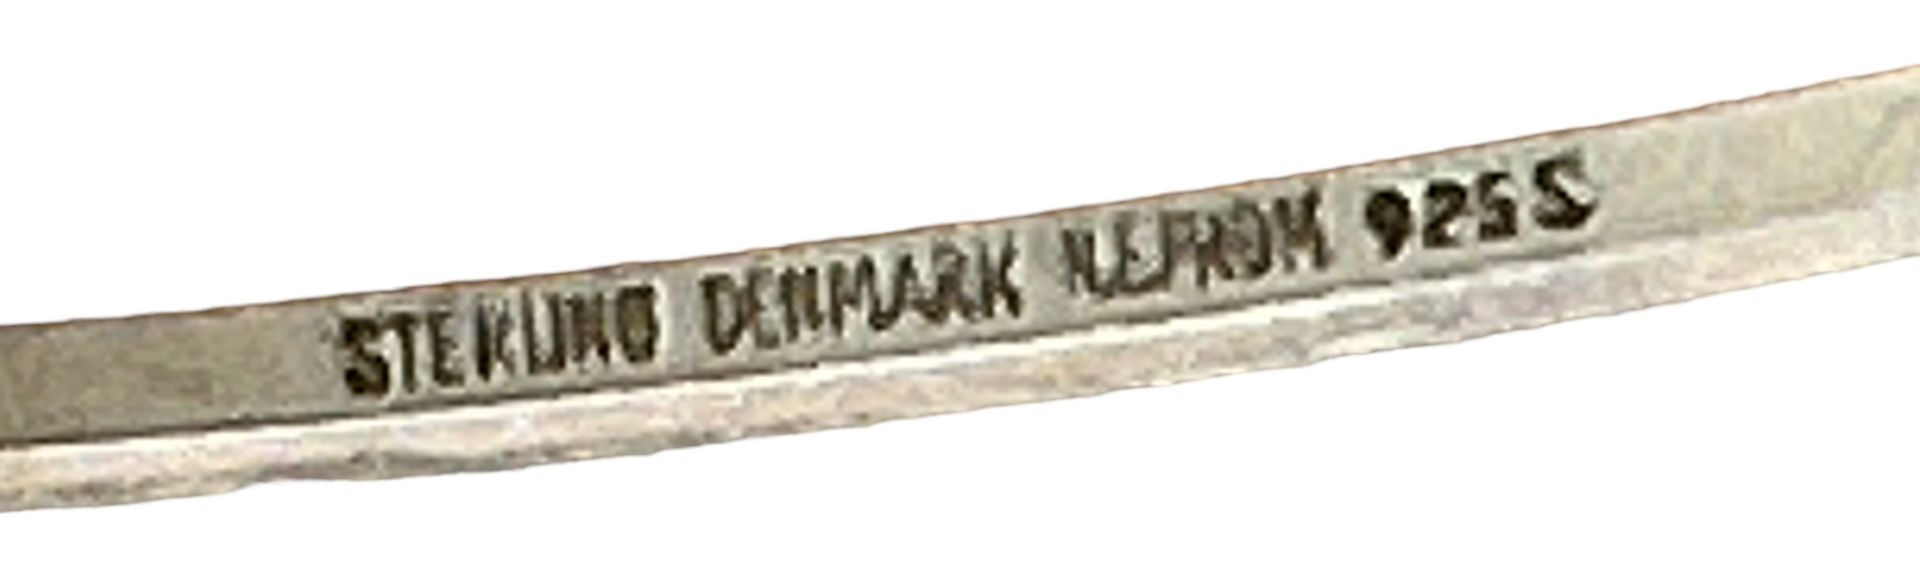 Silber-925-  Collier mit 4 Amethysten, N.E. From, Denmarkn (Nils Erik From)  L-ca. 46 cm,  Anhänger - Bild 3 aus 3